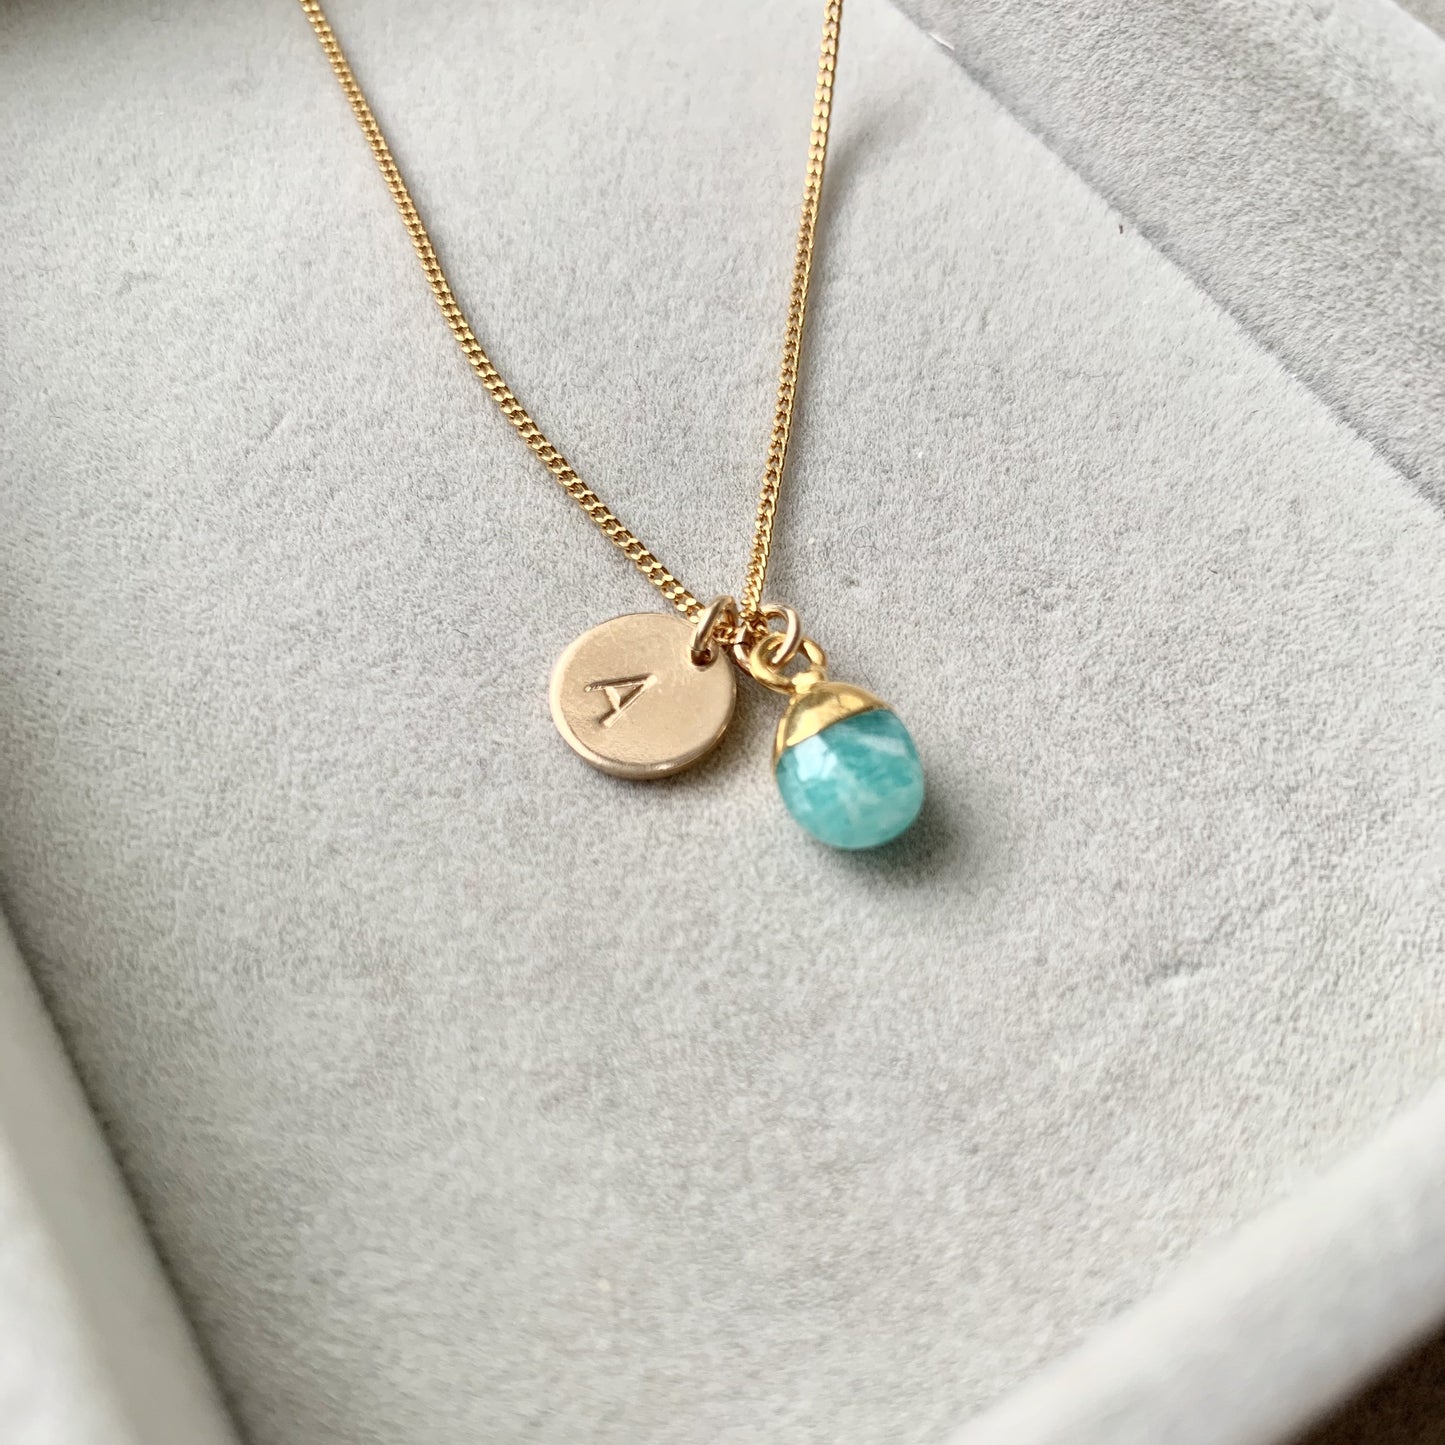 Tiny Tumbled Gemstone Necklace - Amazonite (Confidence) - Decadorn